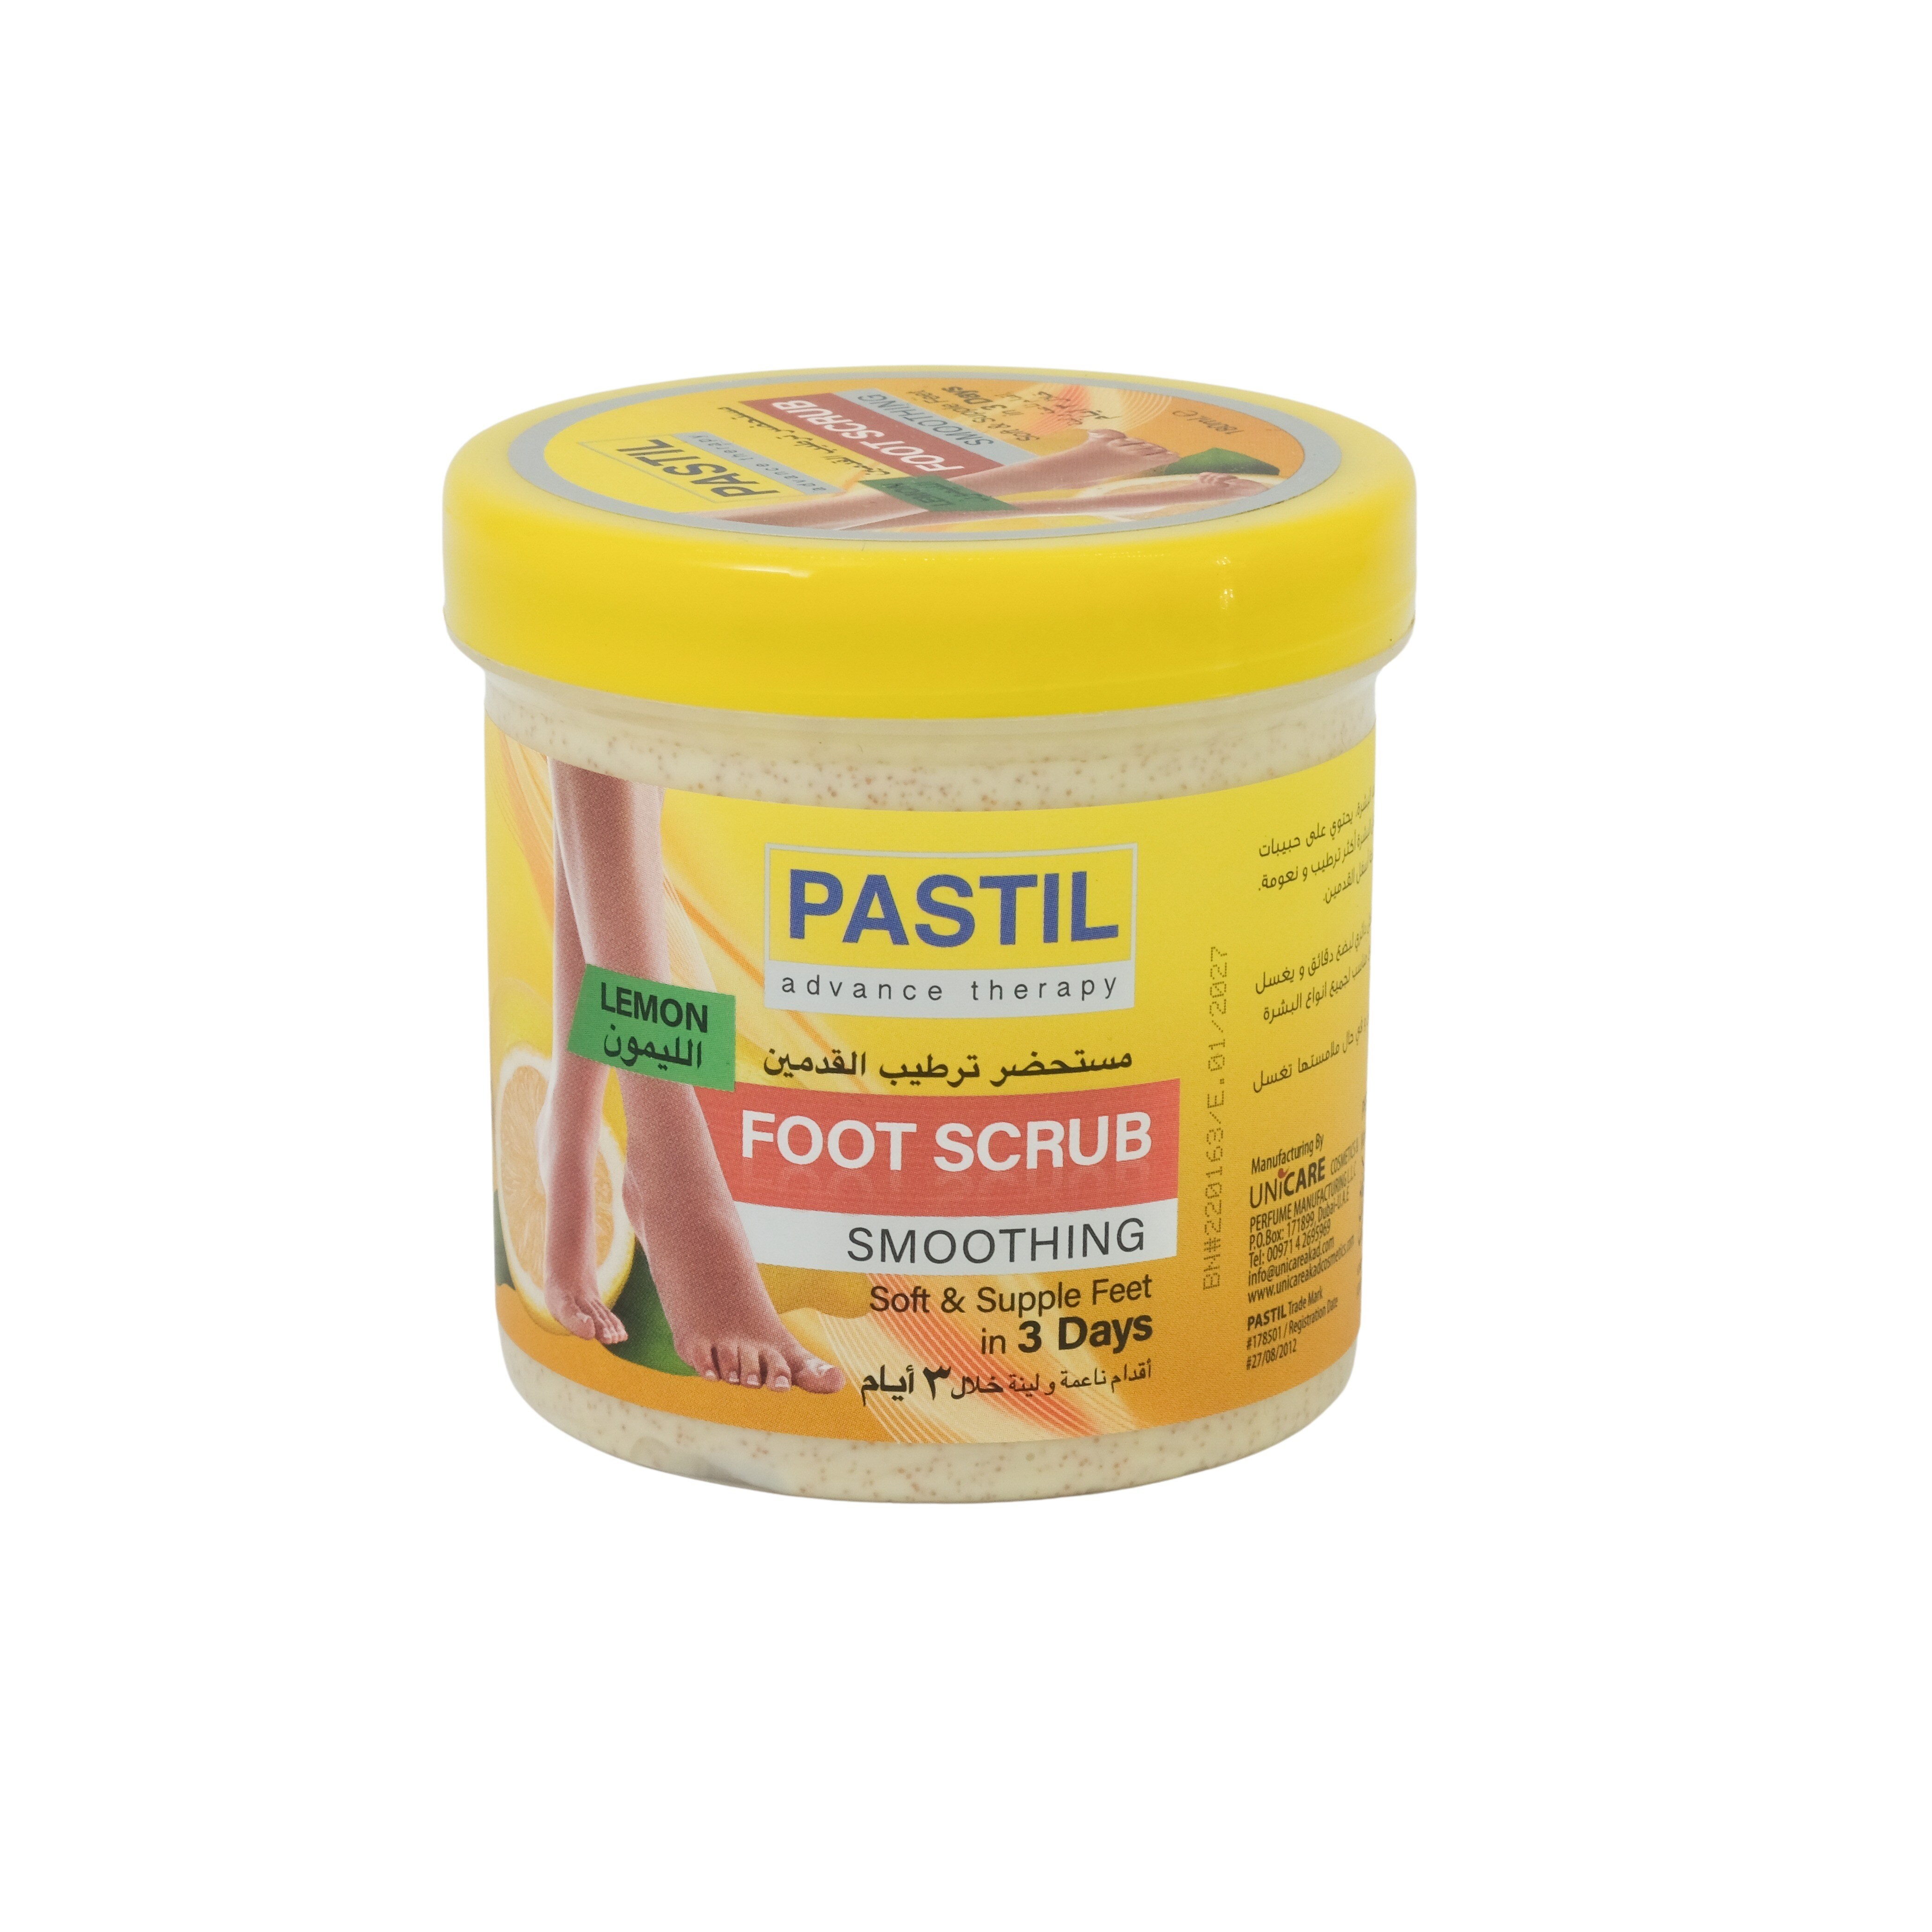 Pastil Lemon Foot Scrub for Soft & Supple Feet, 180ml